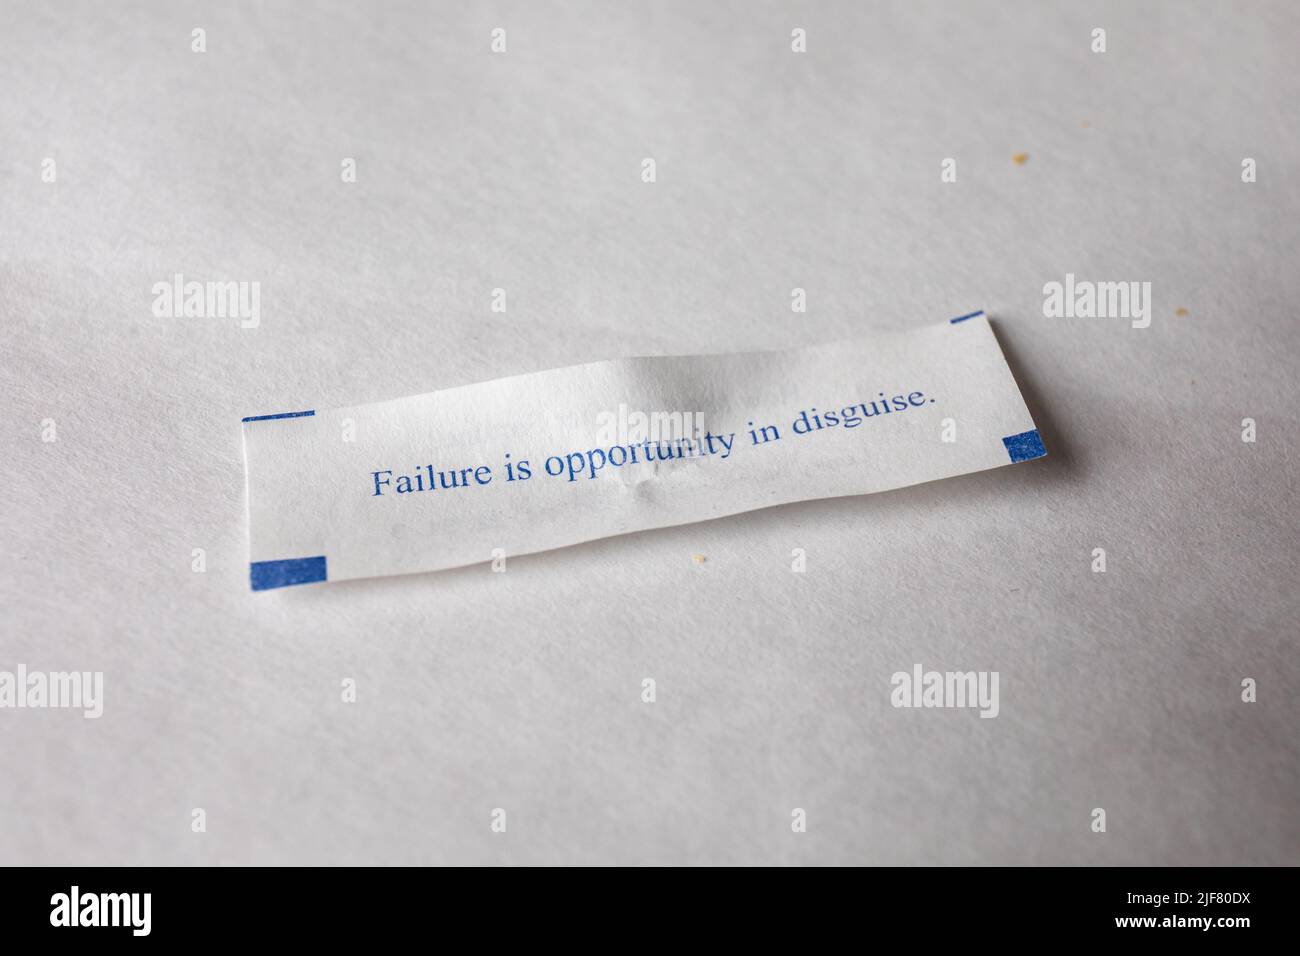 El fracaso es una oportunidad disfrazada. Foto de stock